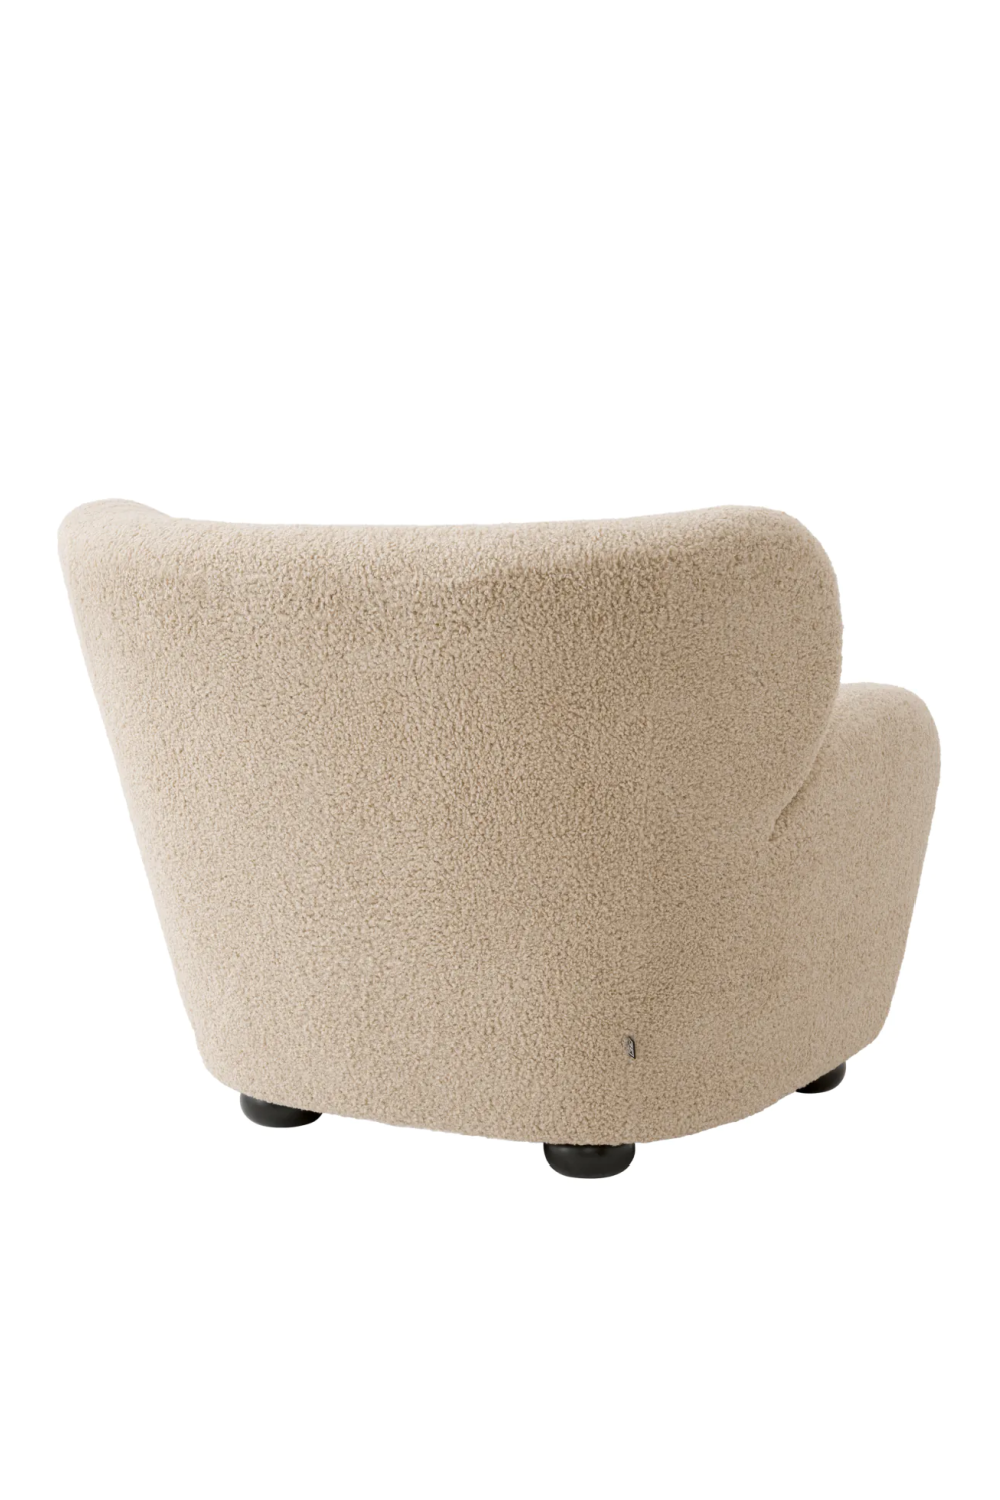 Beige Lounge Chair | Eichholtz Thames | Oroa.com